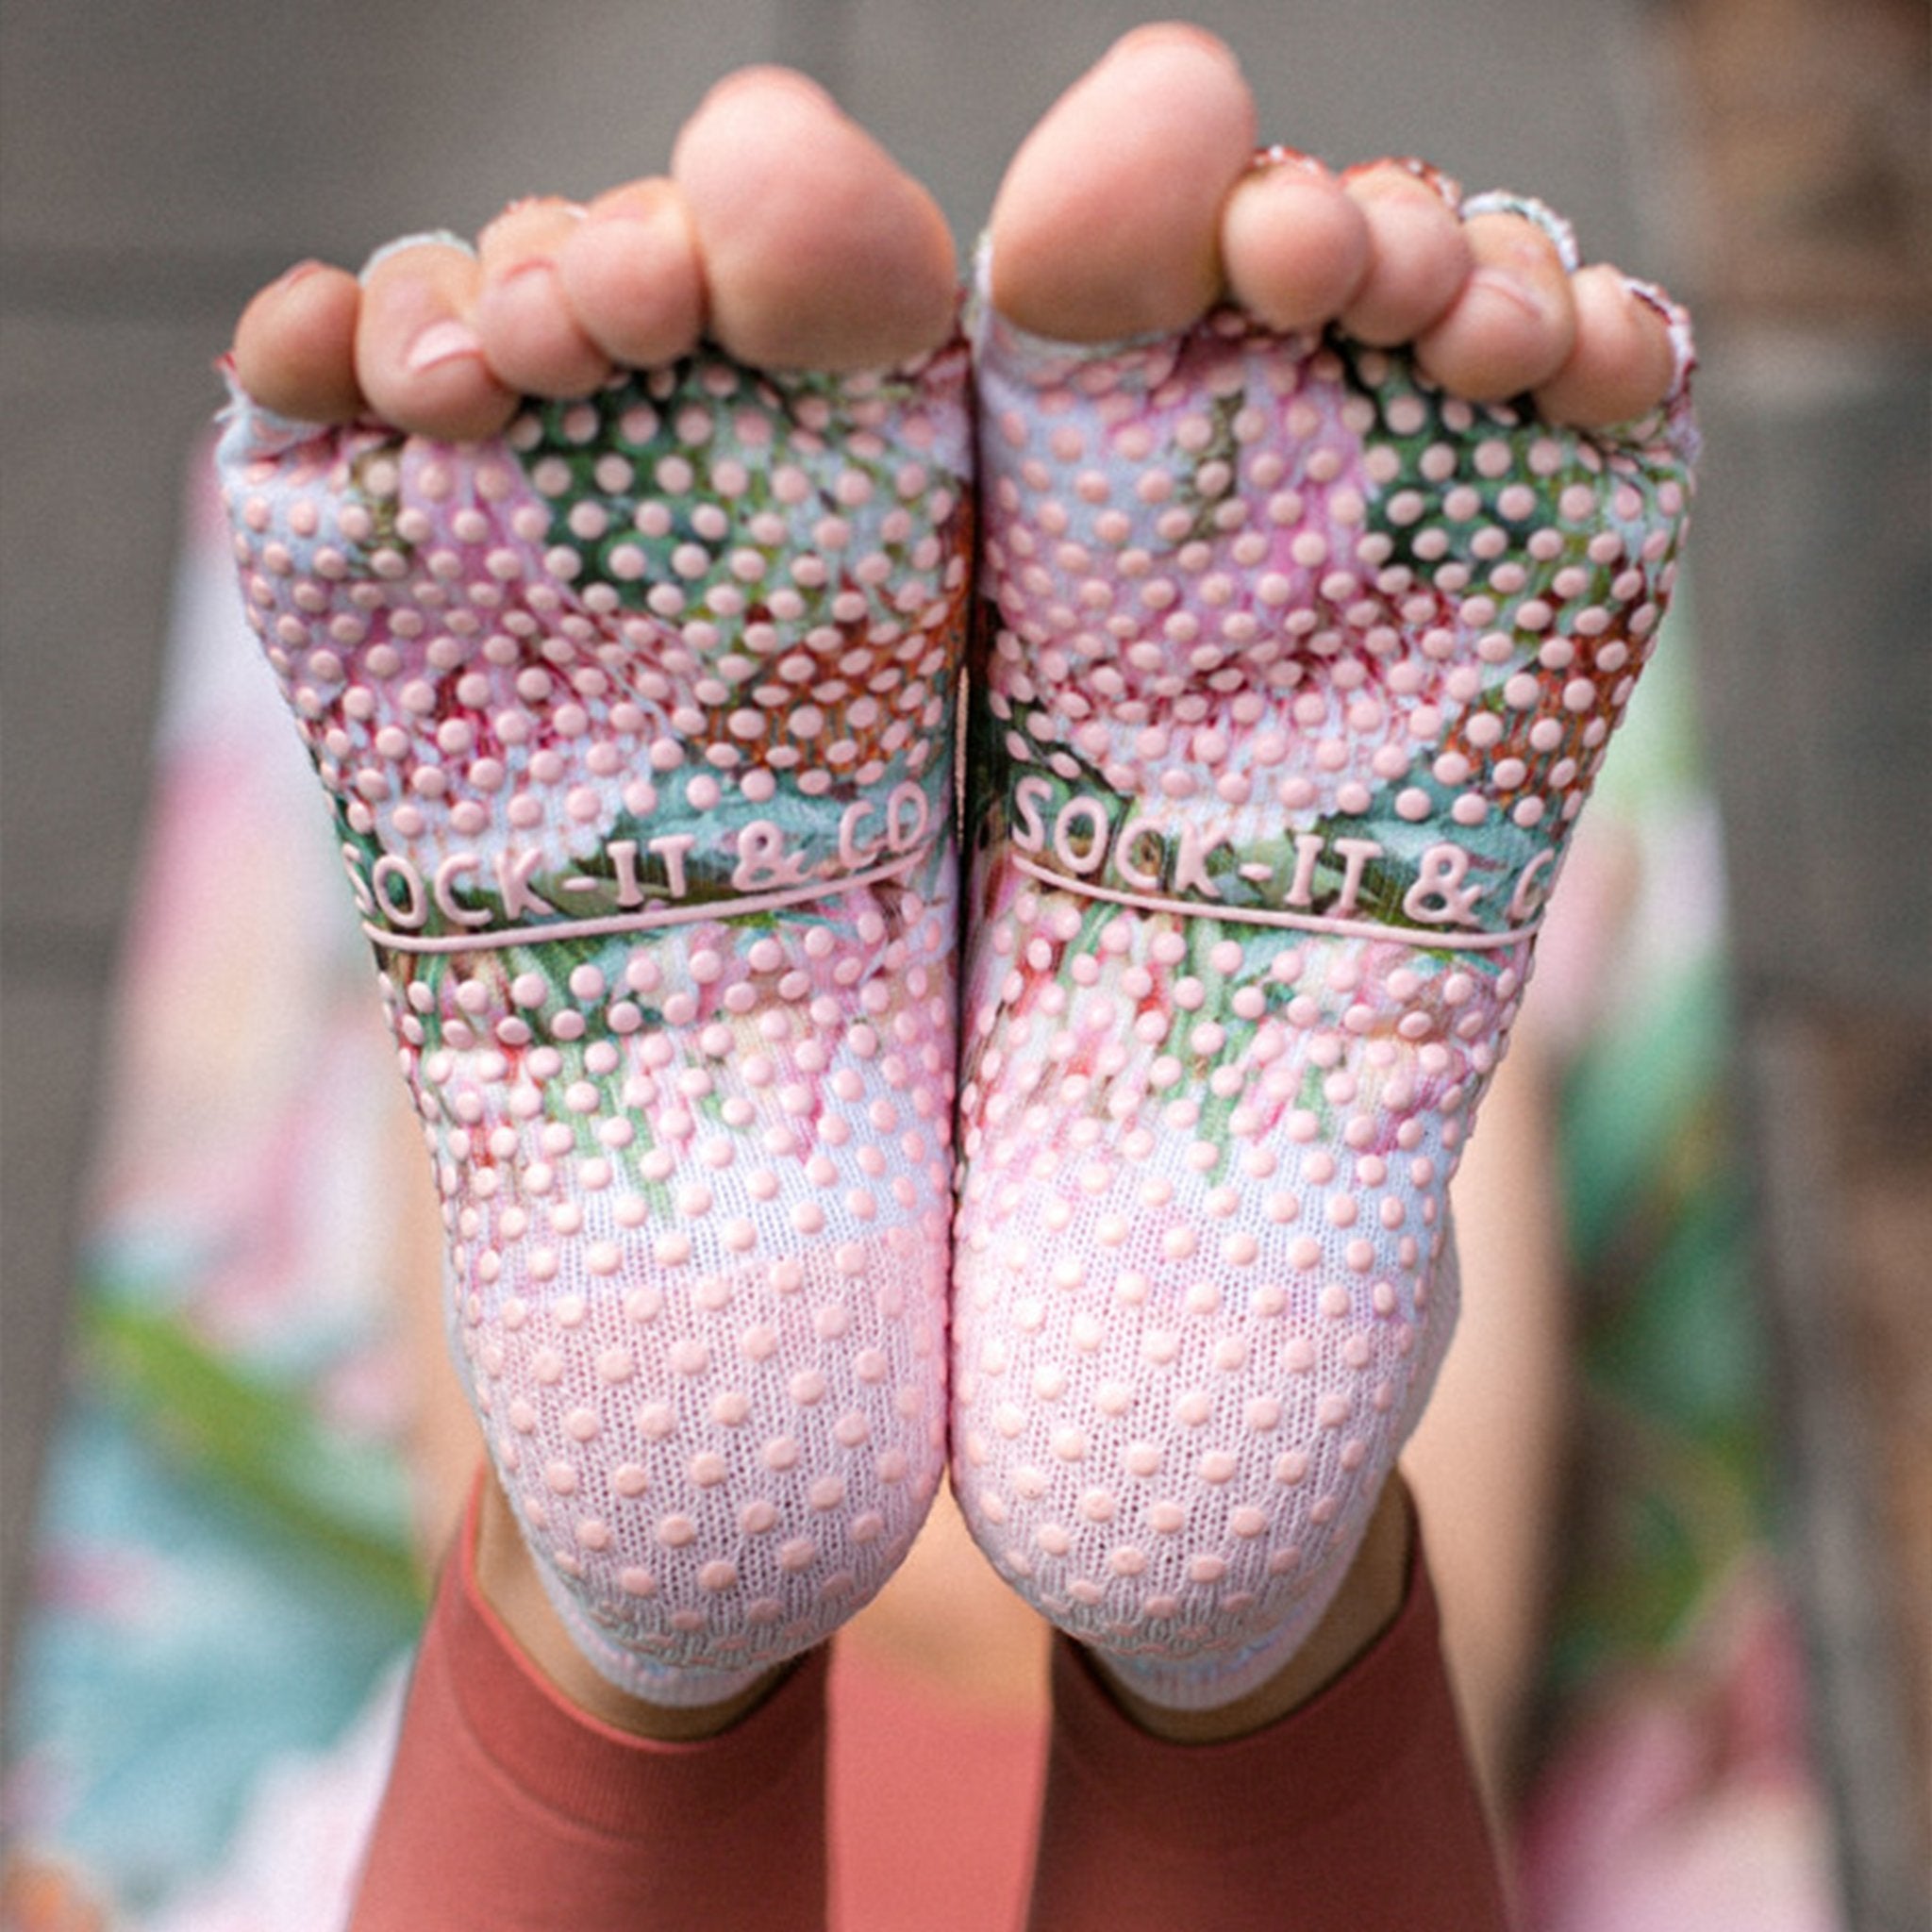  Grip Socks For Women - Pilates Socks